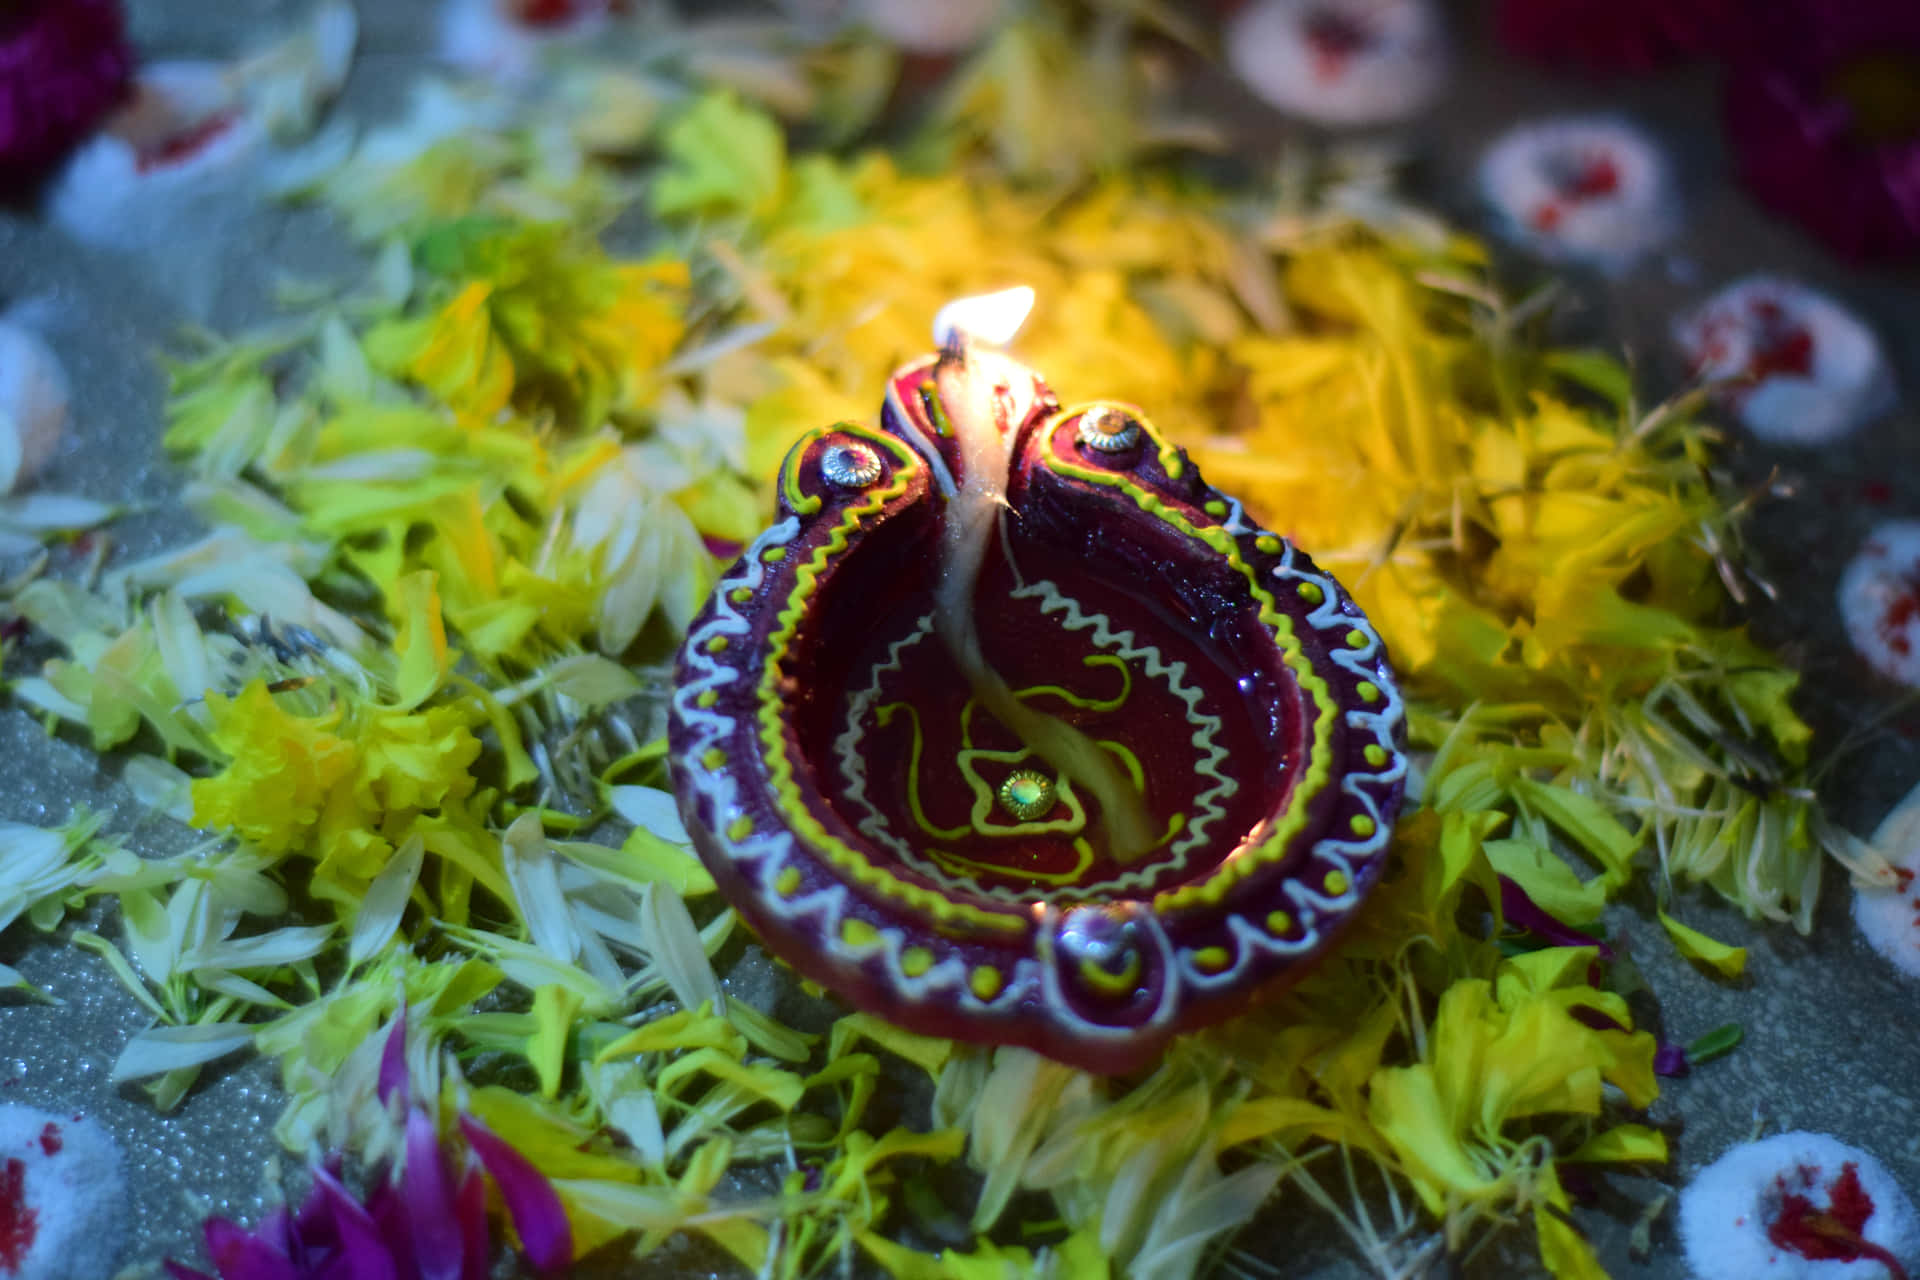 Illuminated Diwali celebration, spectacle of lights on festive background.